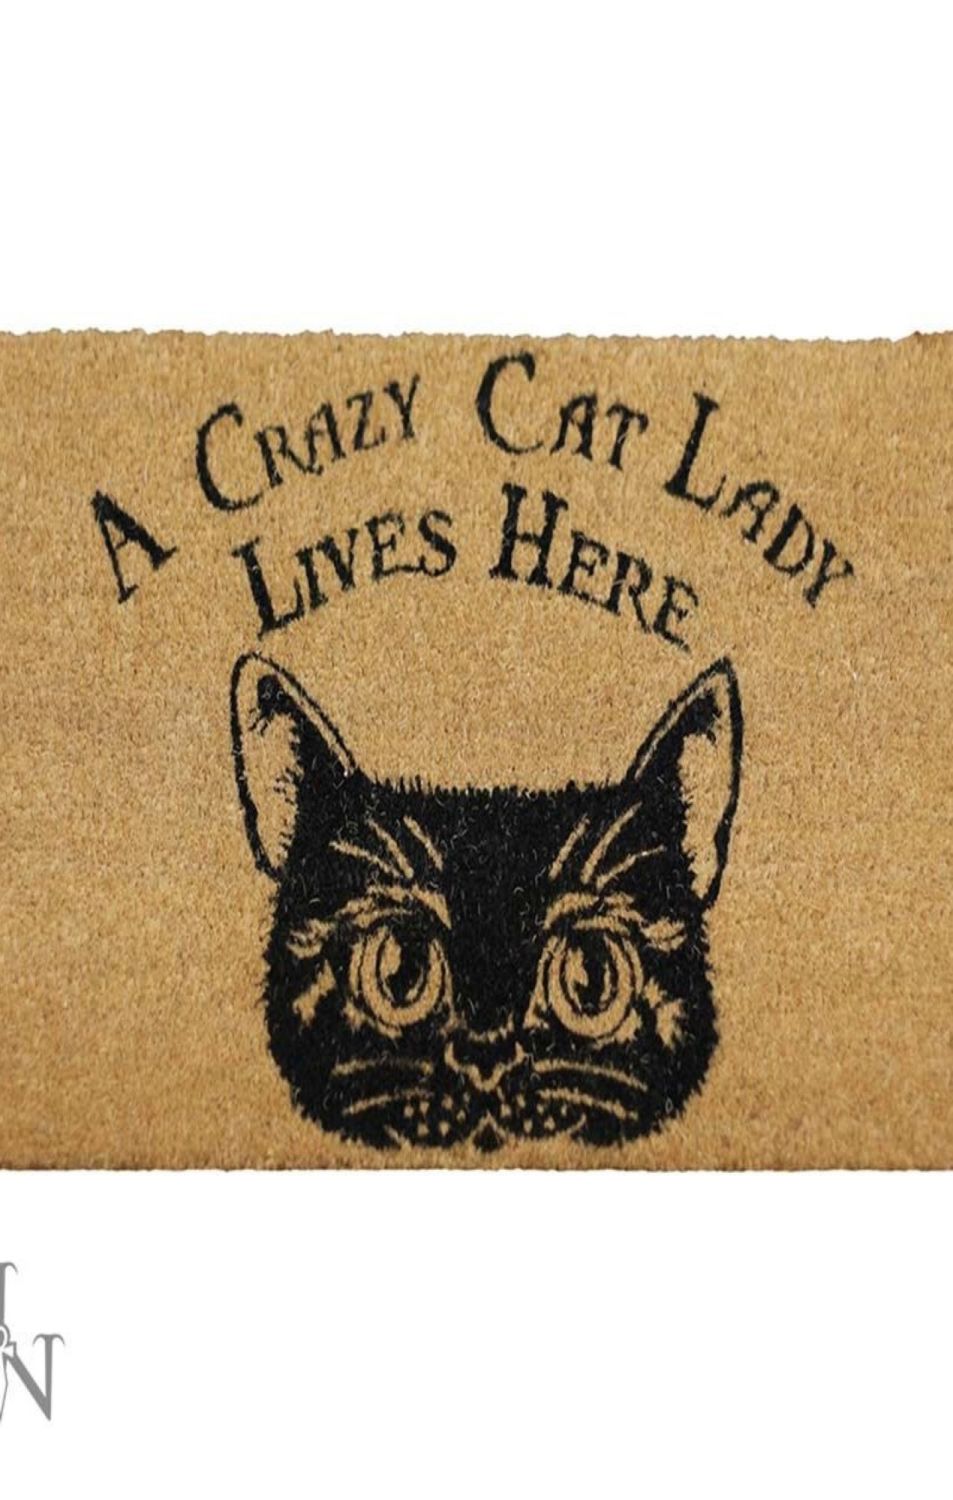 Crazy cat lady doormat RRP £24.99